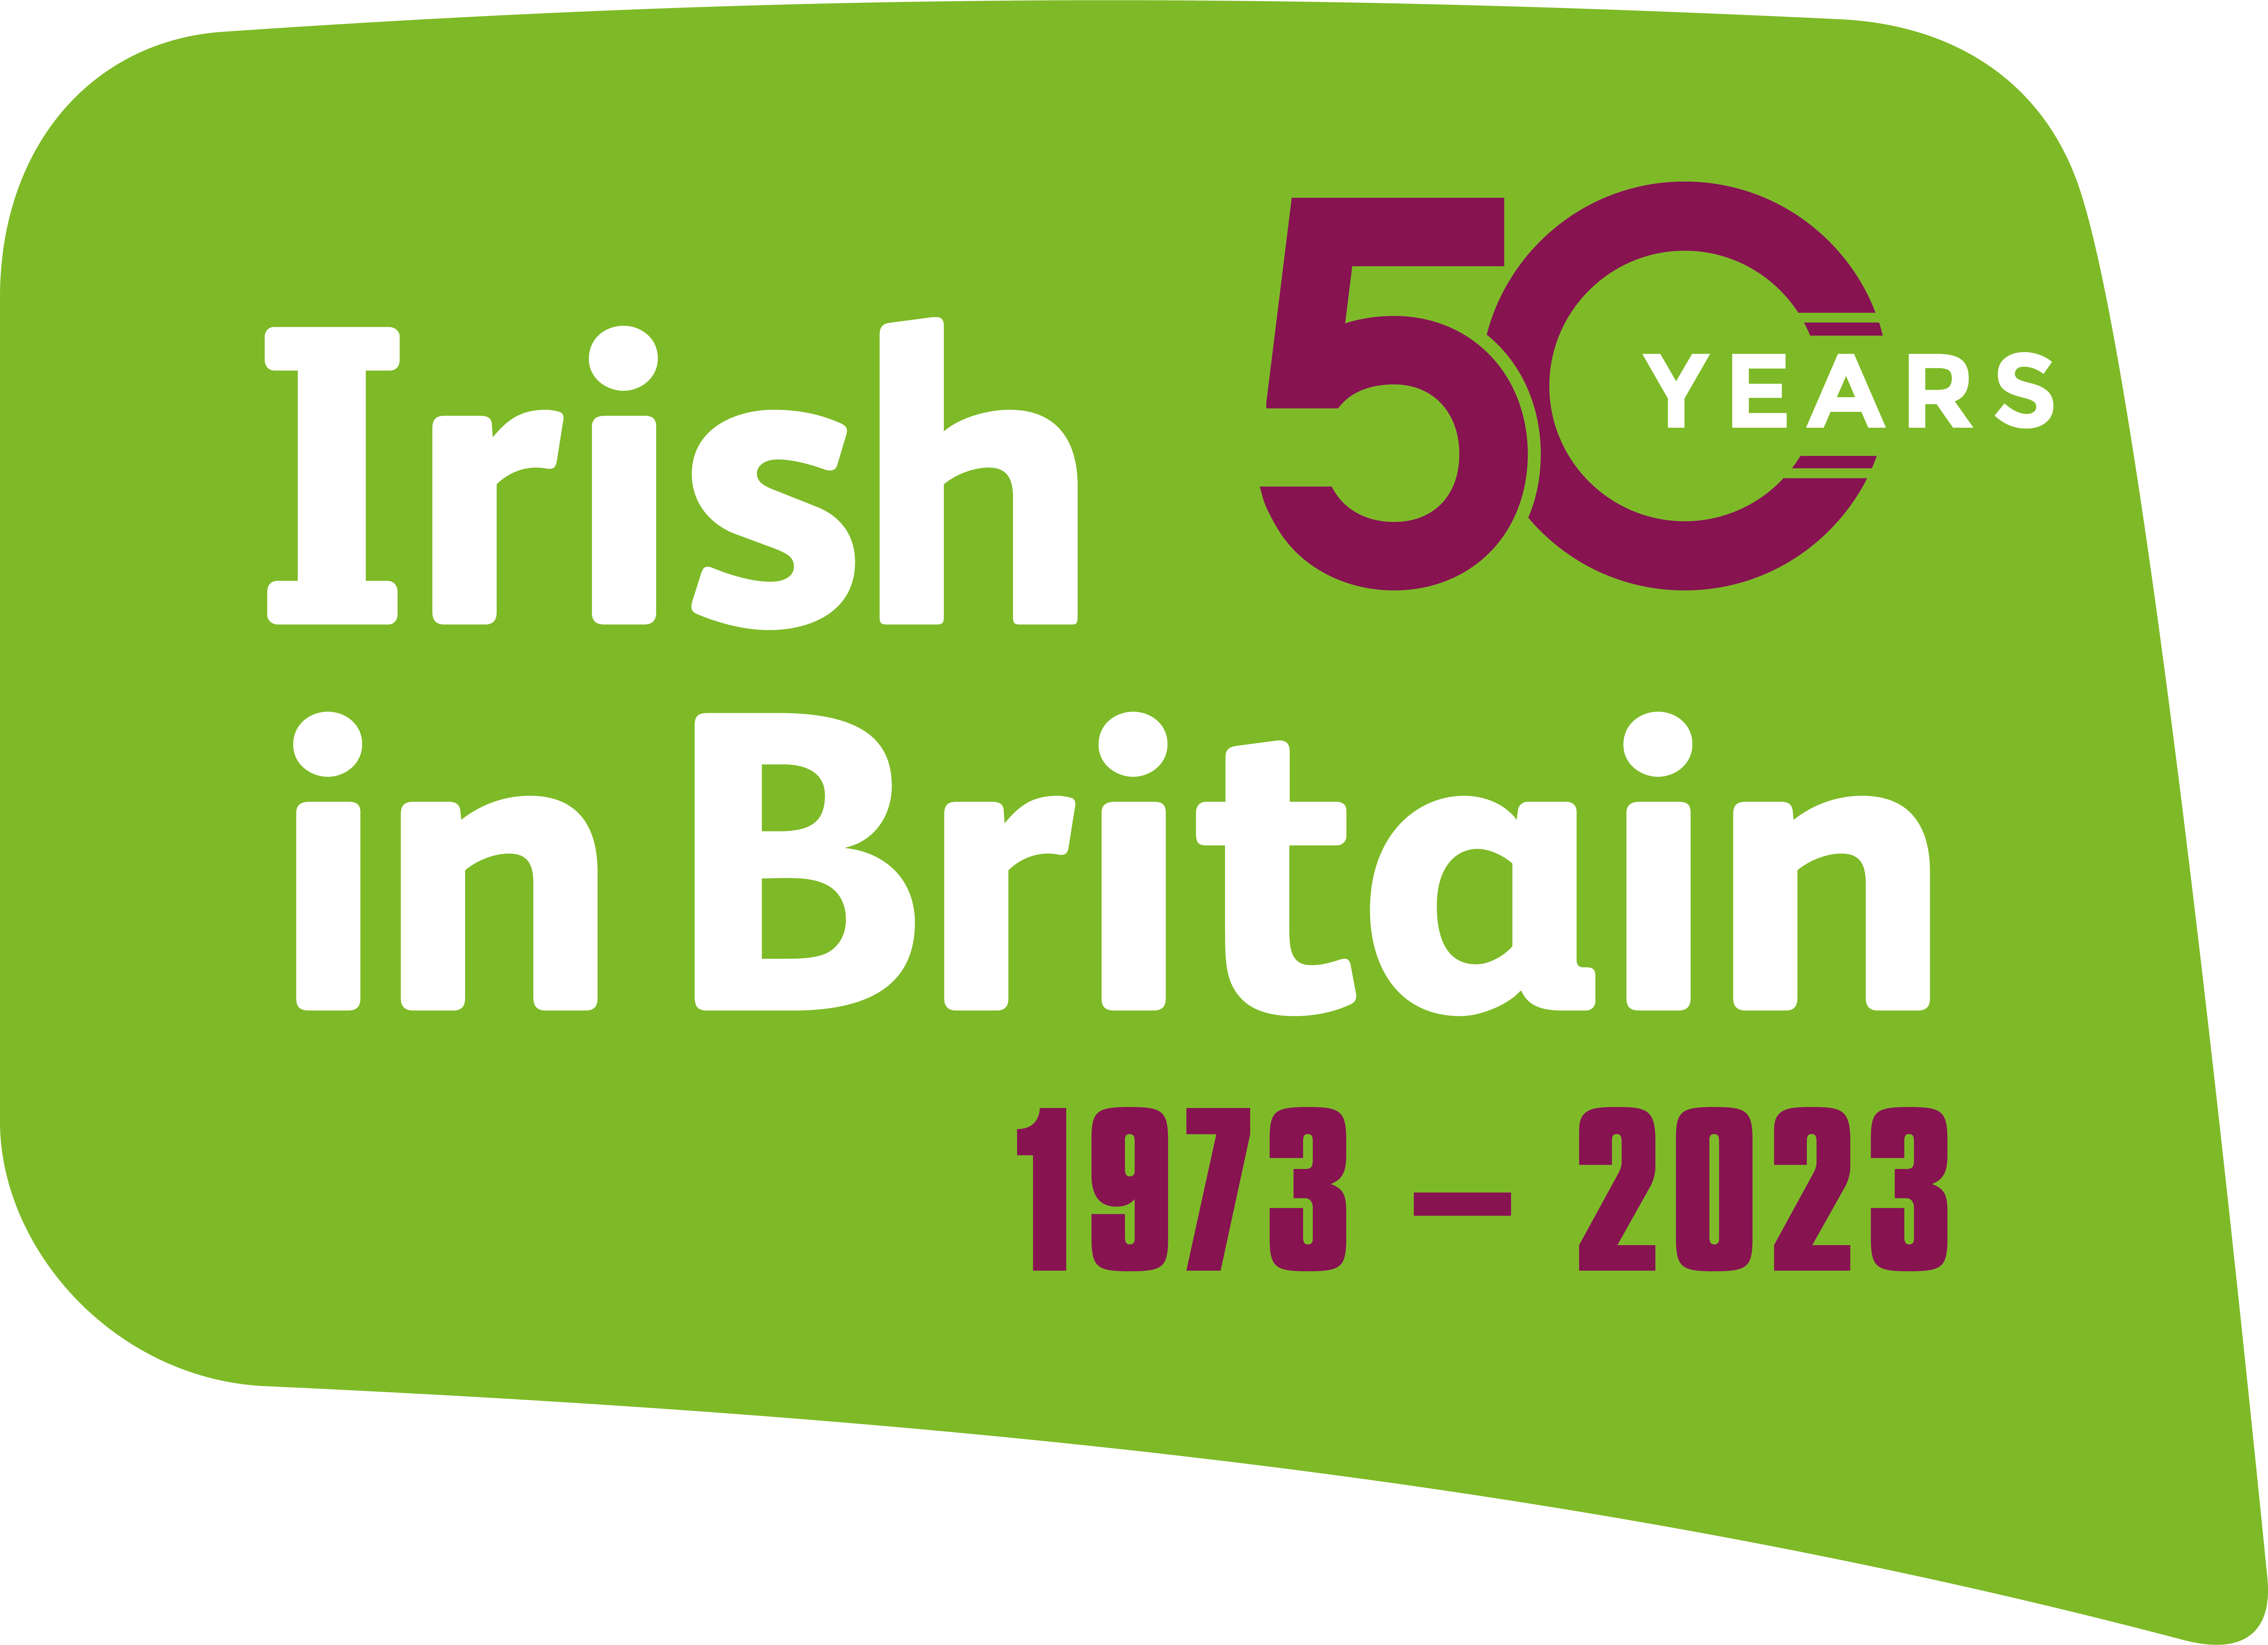 Irish in Britain 50th anniversary logo